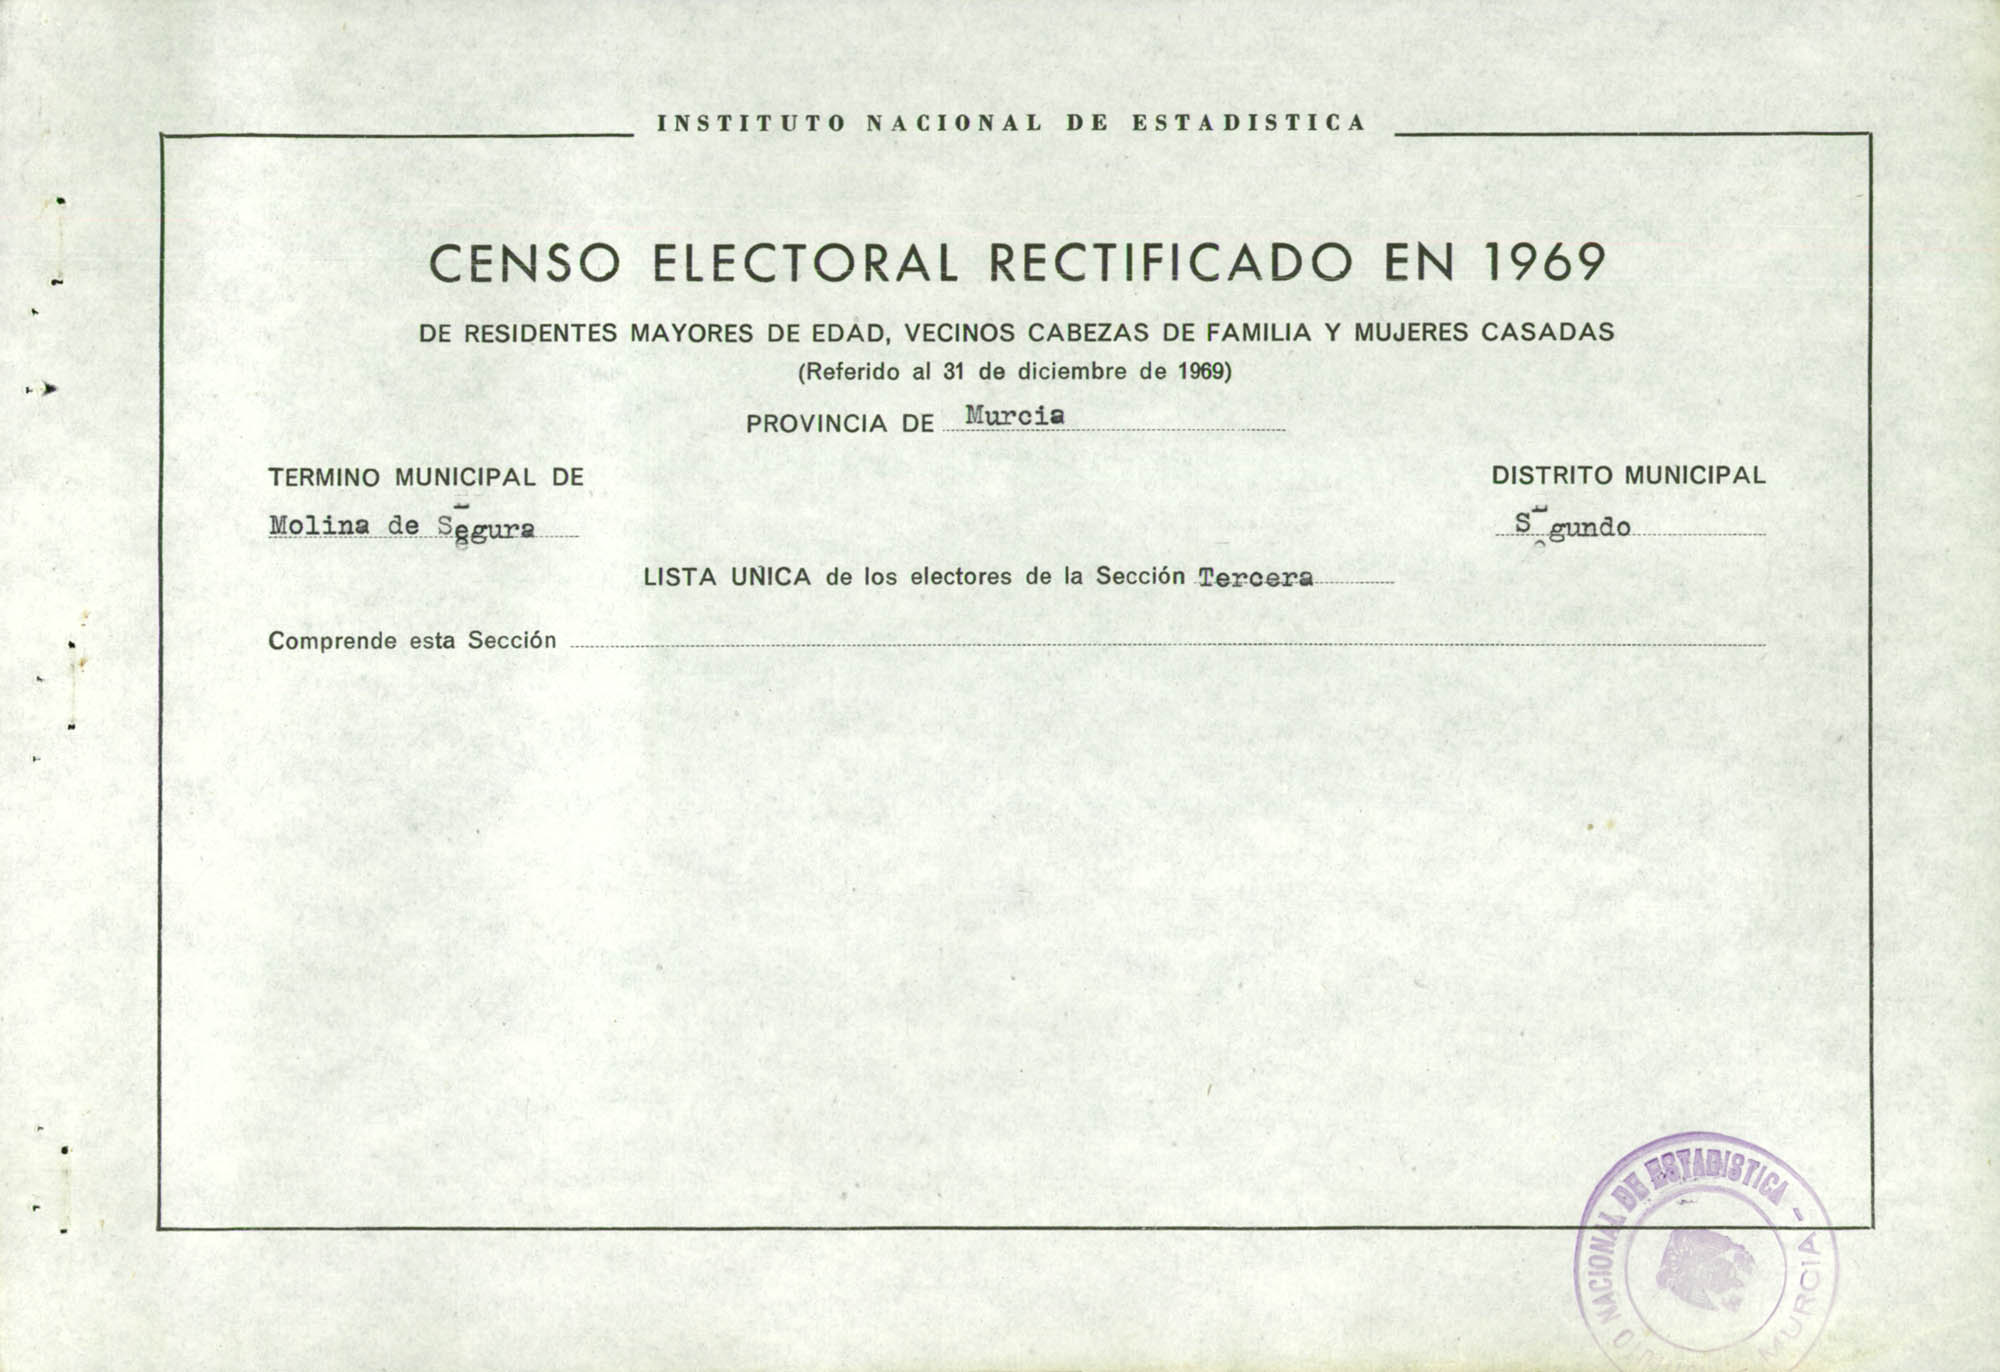 Censo electoral rectificado en 1969: listas definitivas de Molina de Segura, Distrito 2º, sección 3ª.